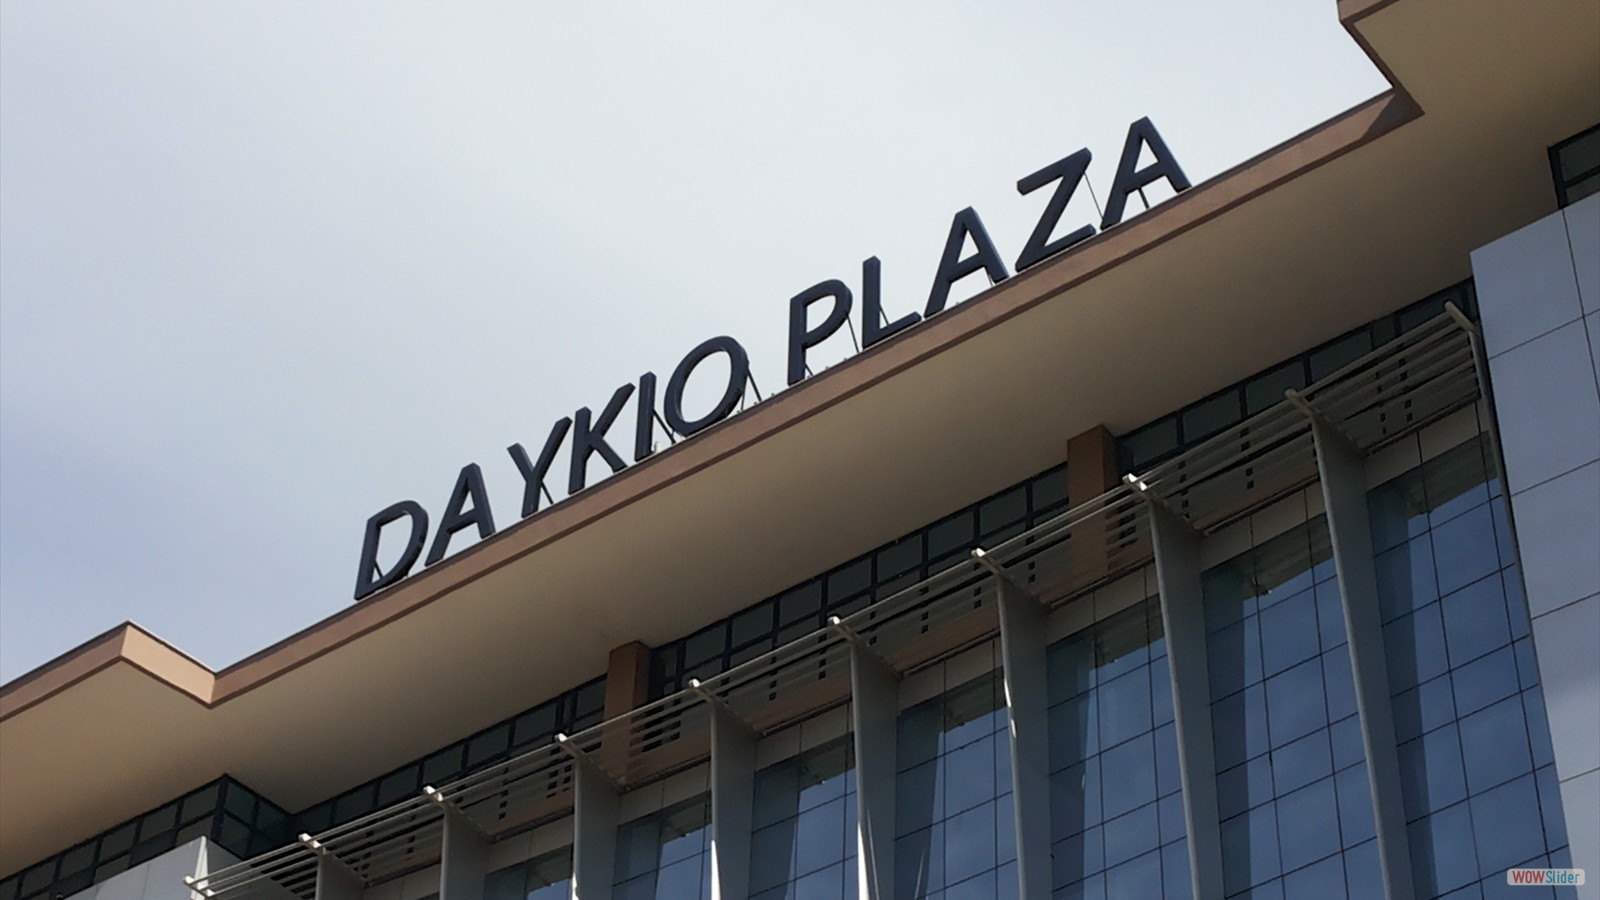 Daykio Plaza